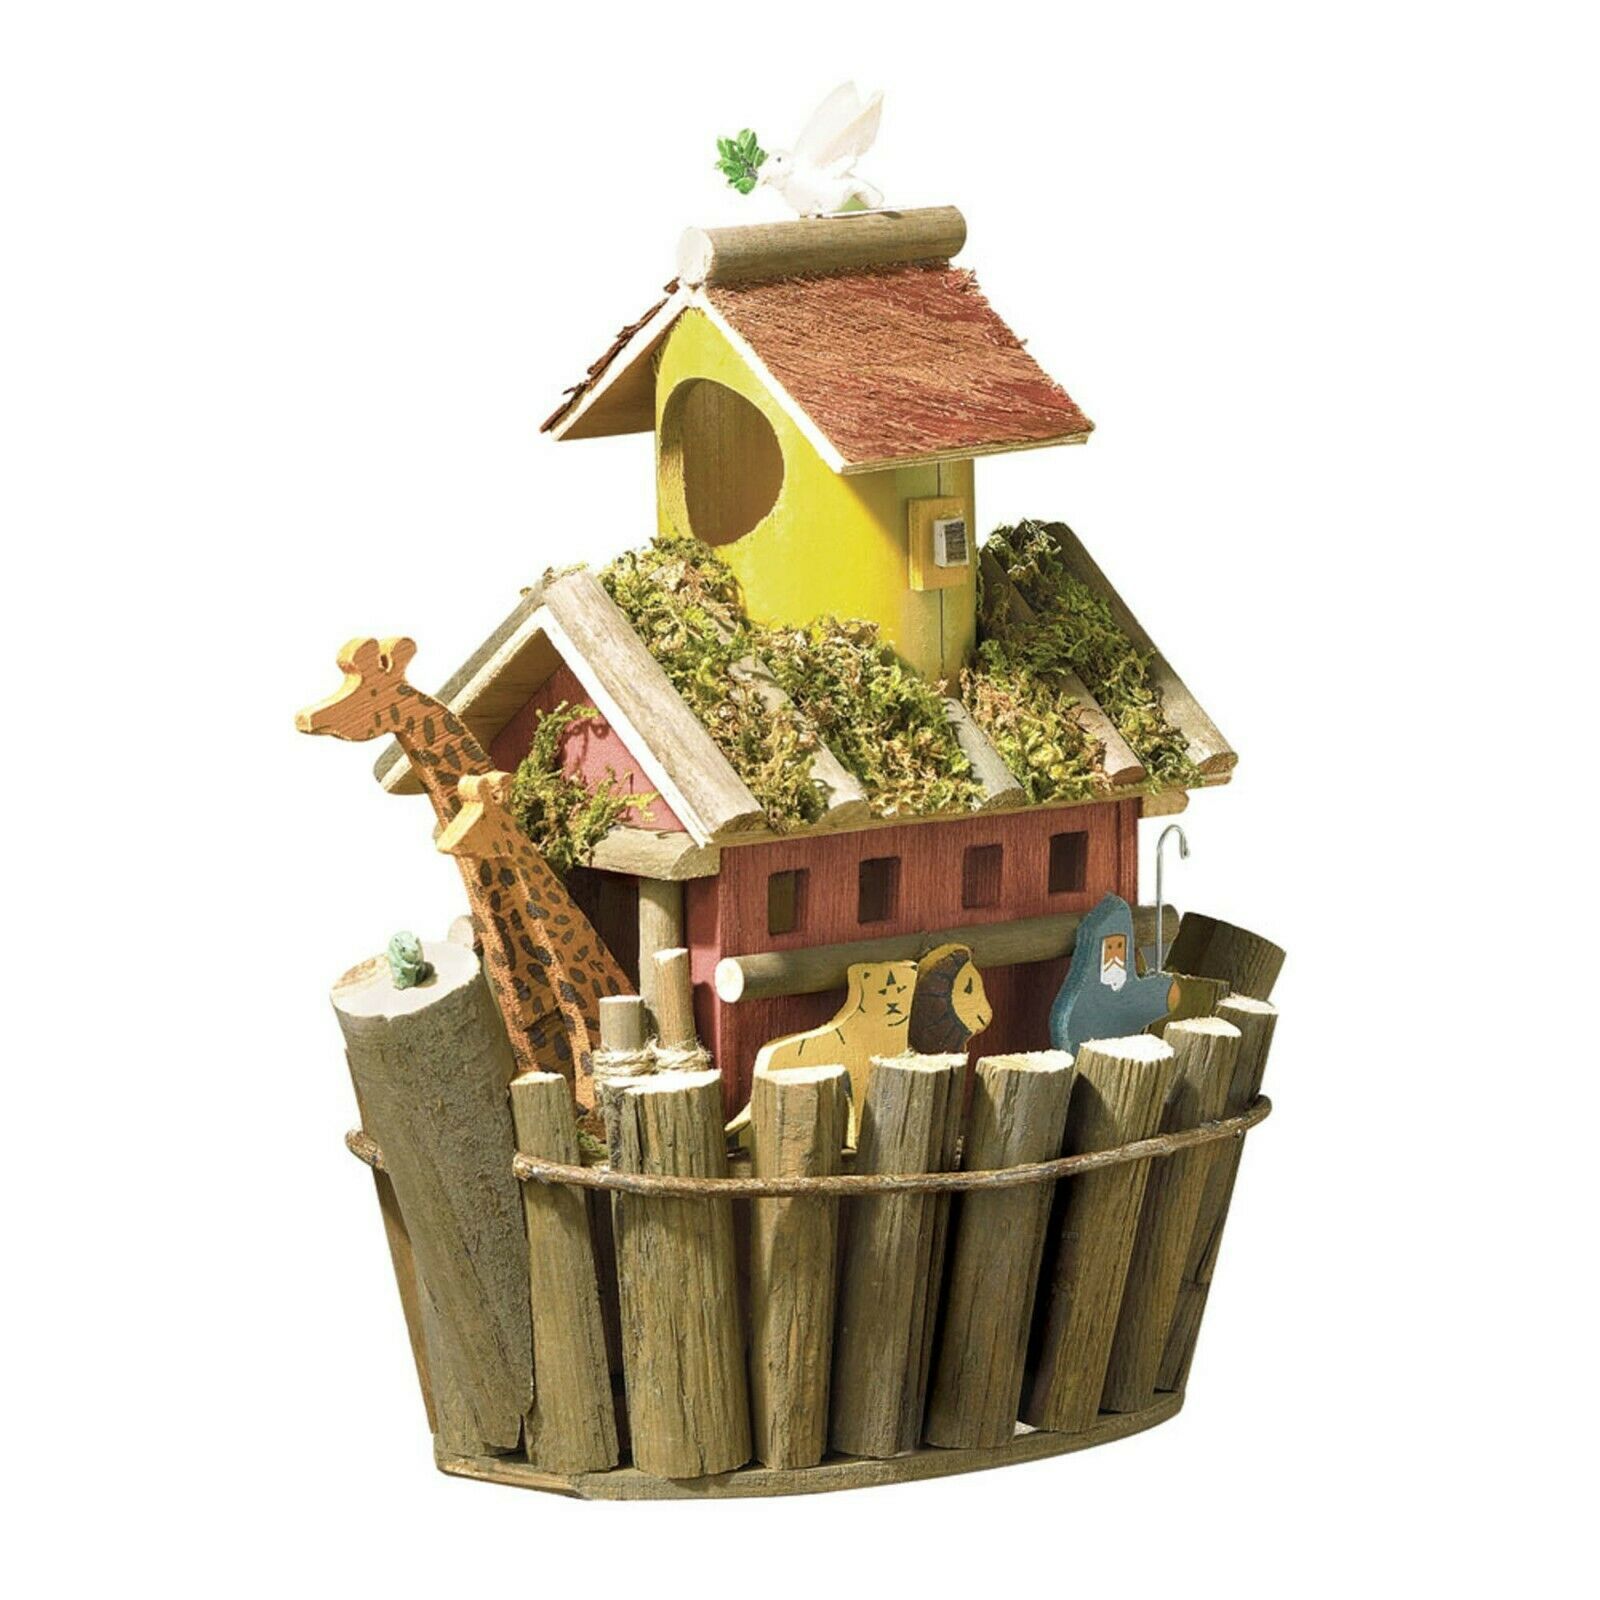 Noah's Ark Brown Wood Birdhouse - $19.96